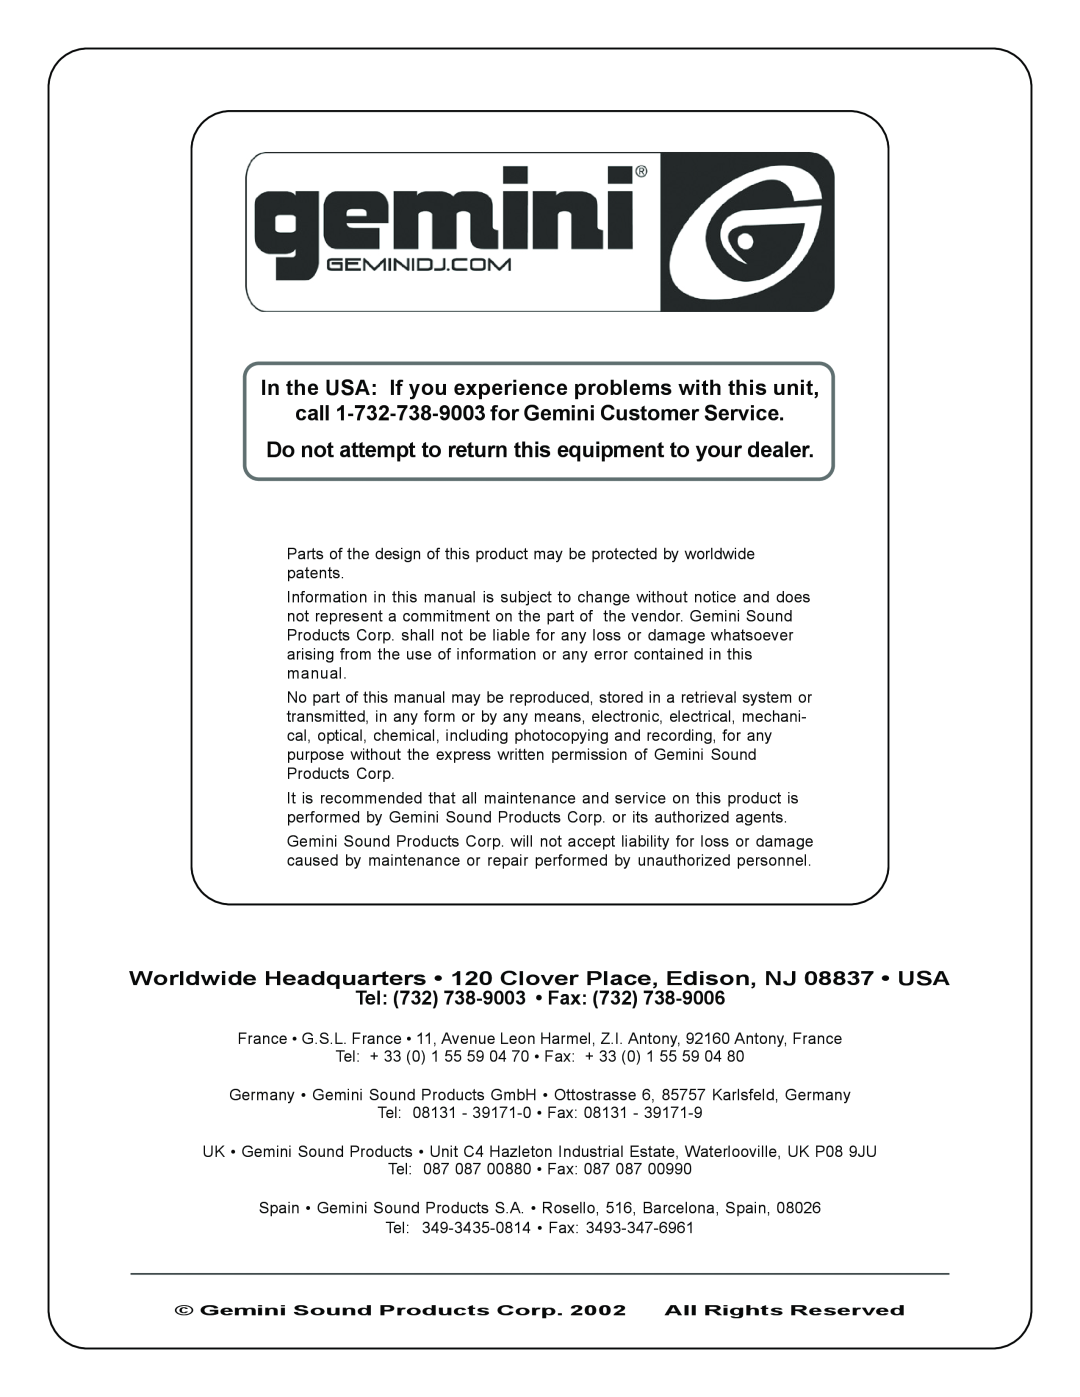 Gemini XL-120 manual call 1-732-738-9003for Gemini Customer Service, Tel 732 738-9003 Fax 